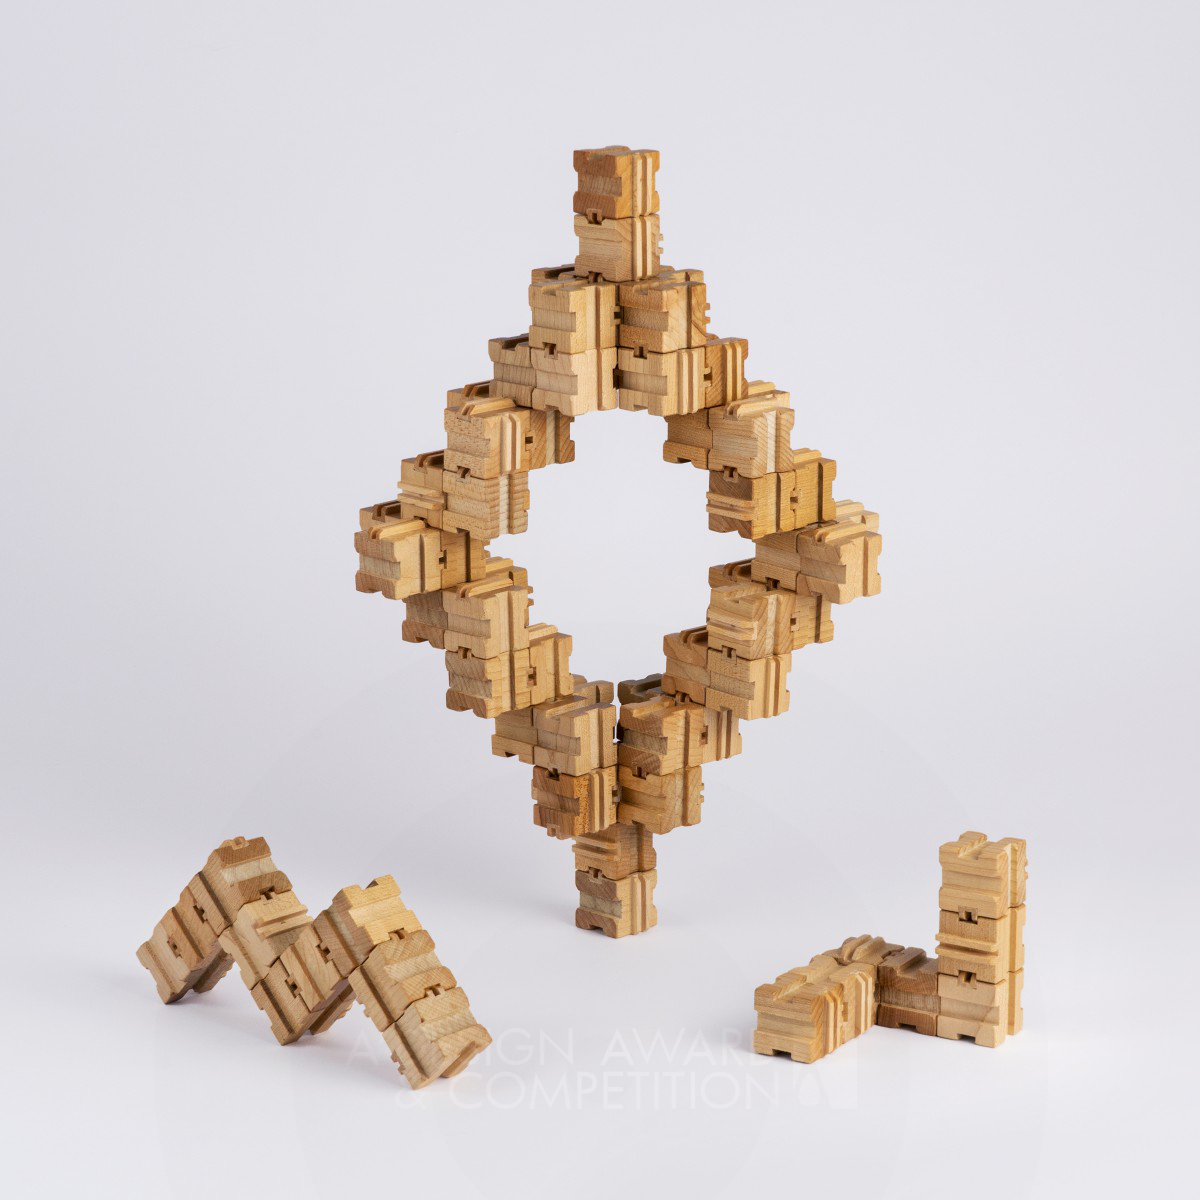 伝統的な木工技術に触発された、無限の可能性を秘めた木製パズル「Morcube」